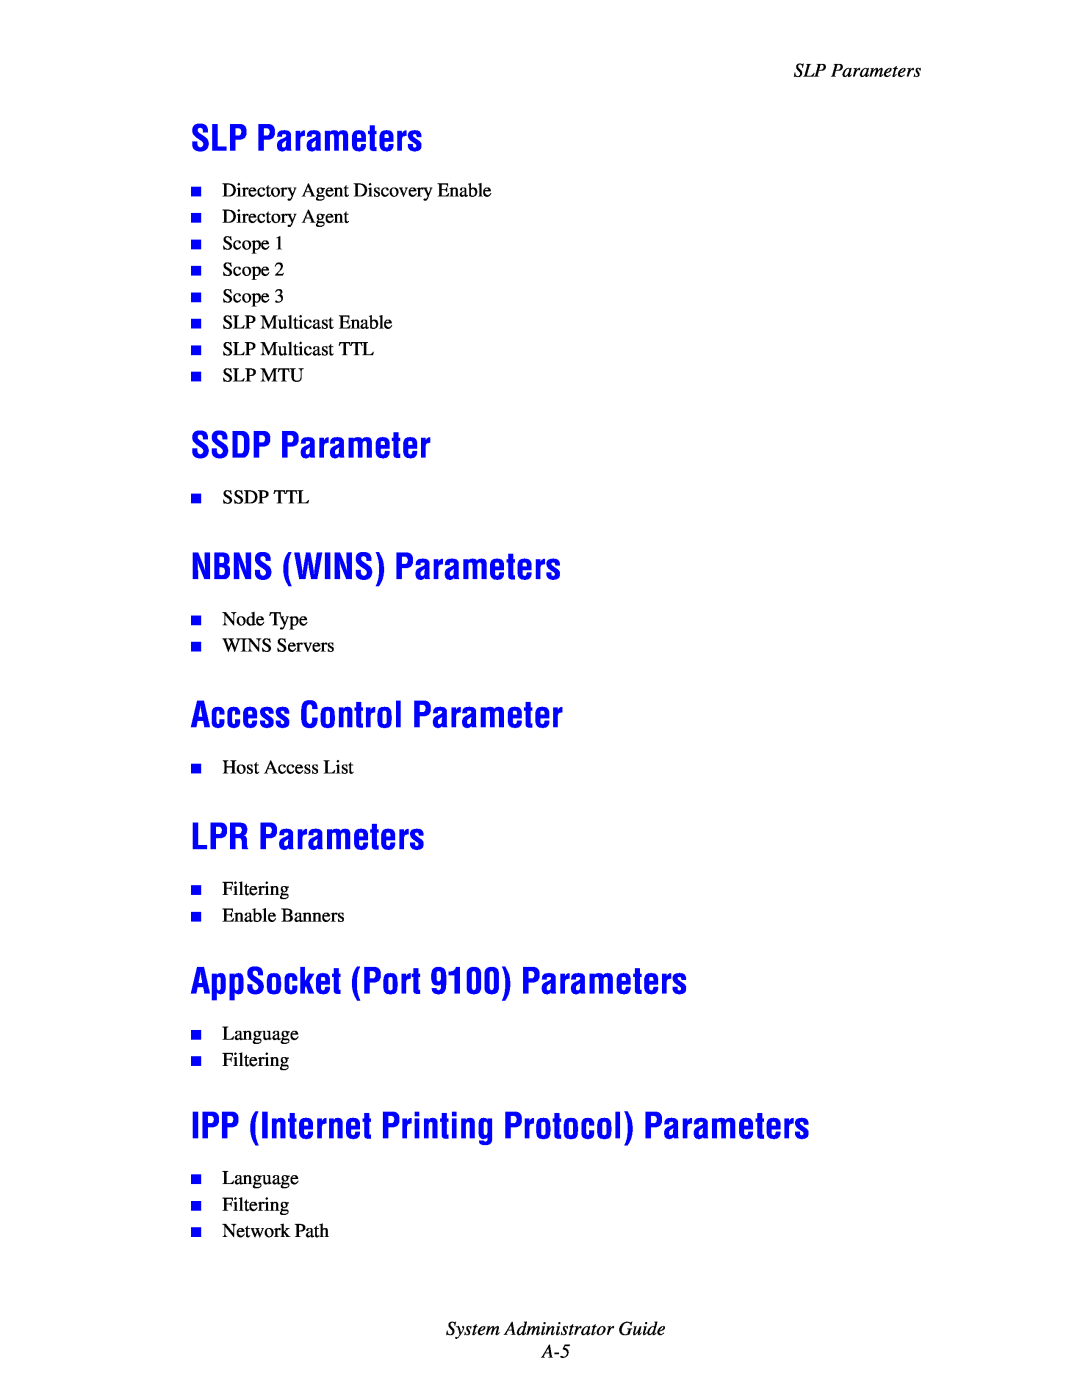 Xerox 6300, 6350, 8500, 8550 manual SLP Parameters, SSDP Parameter, NBNS WINS Parameters, Access Control Parameter 